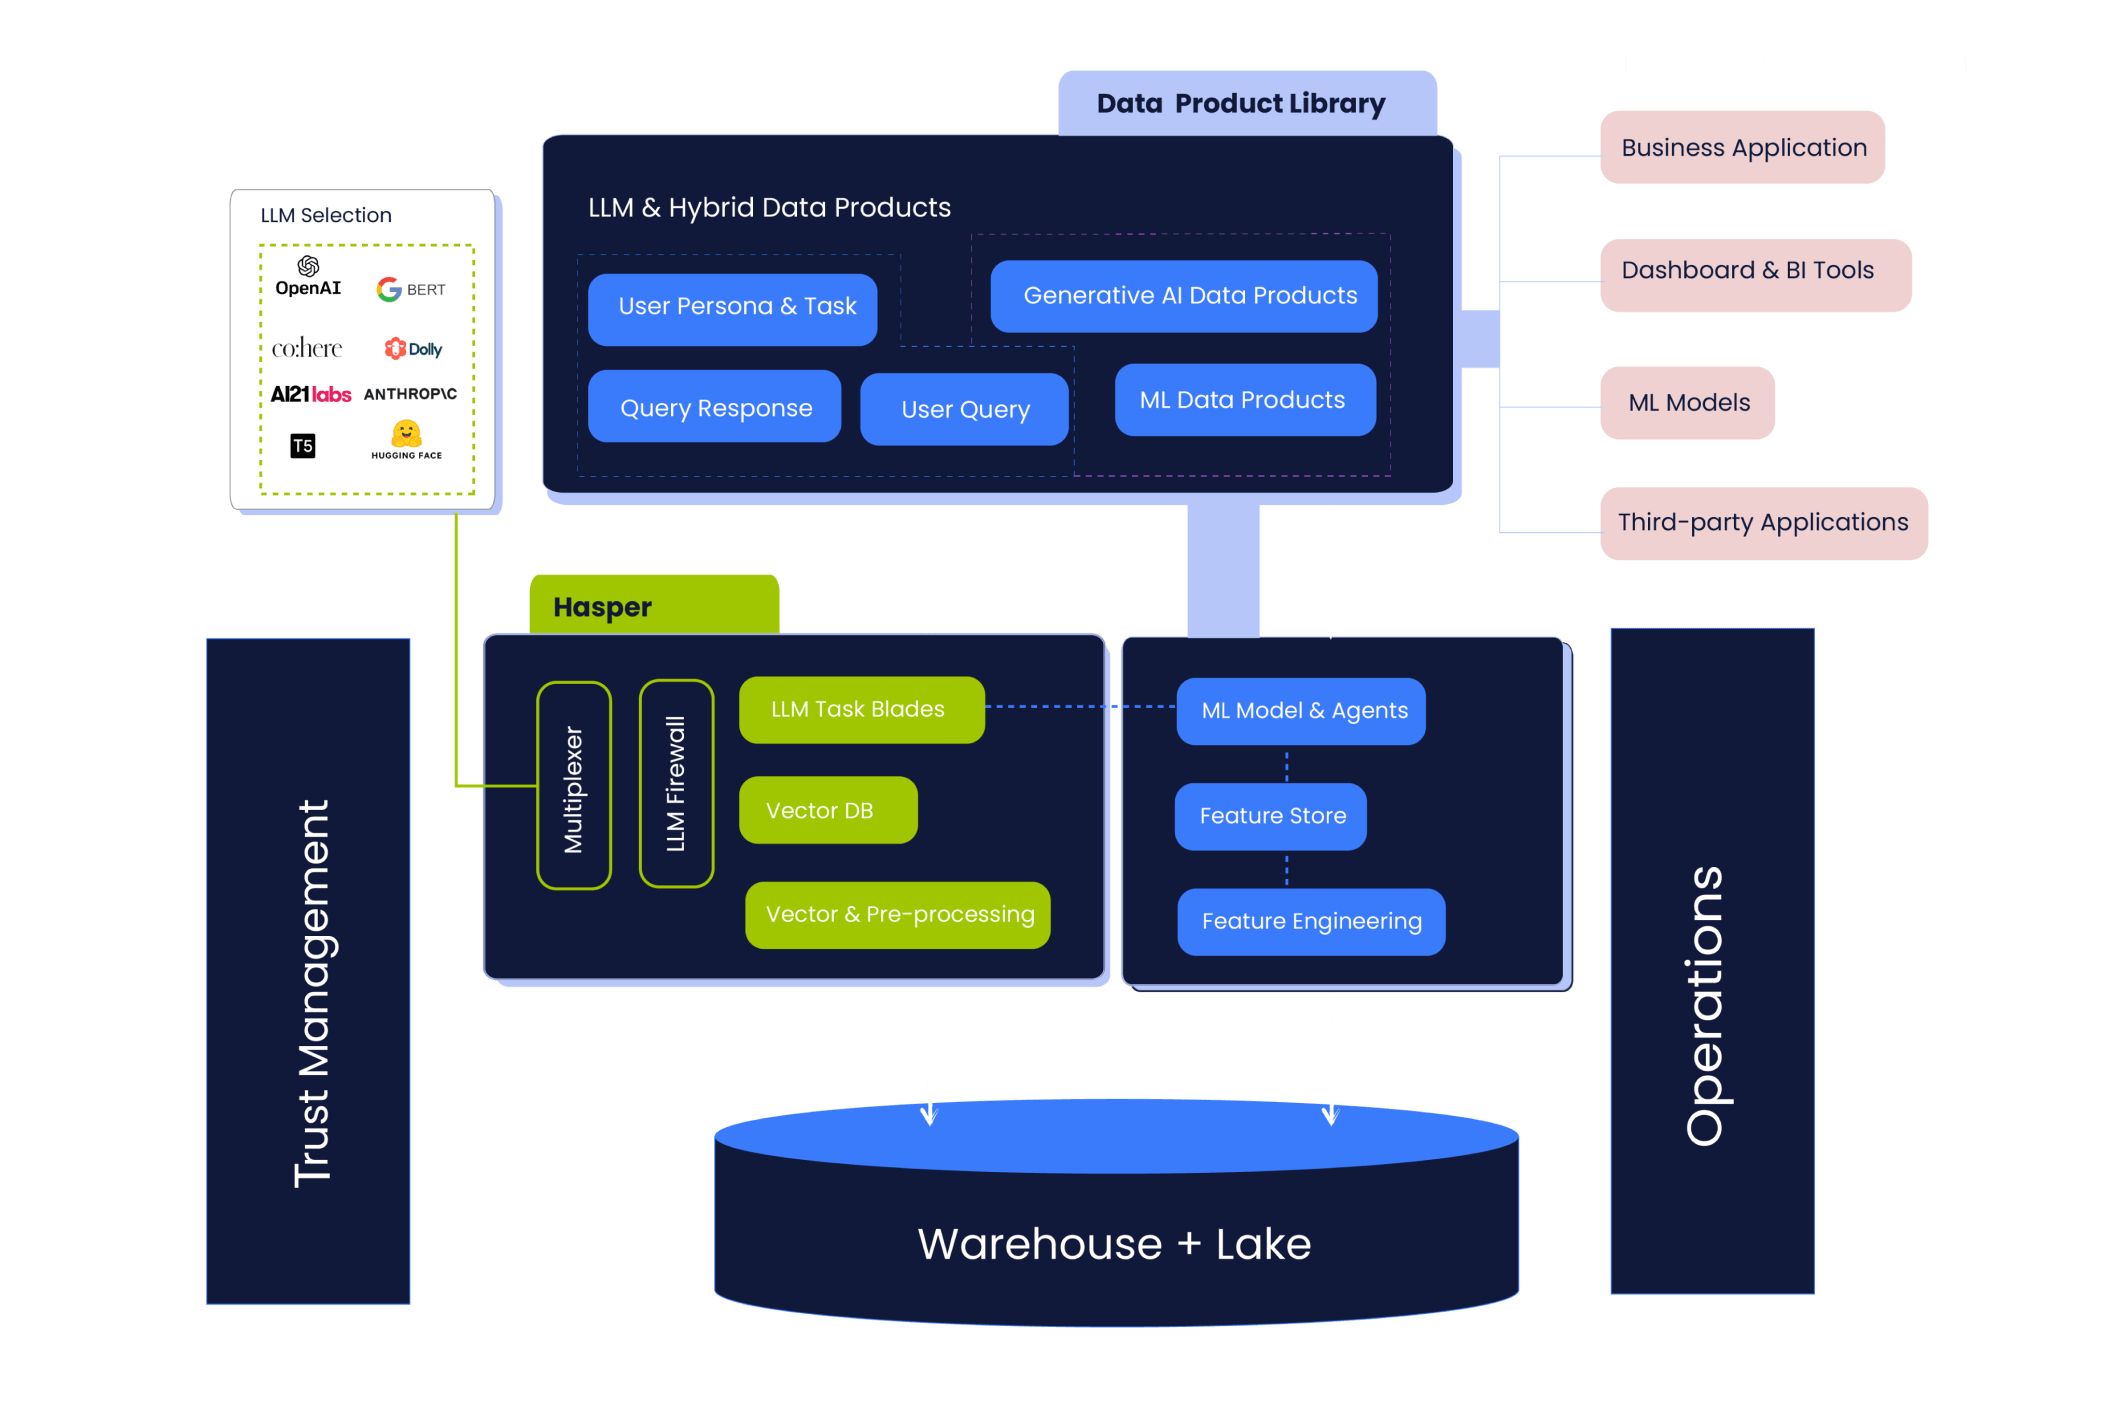 Scribble Data platform diagram